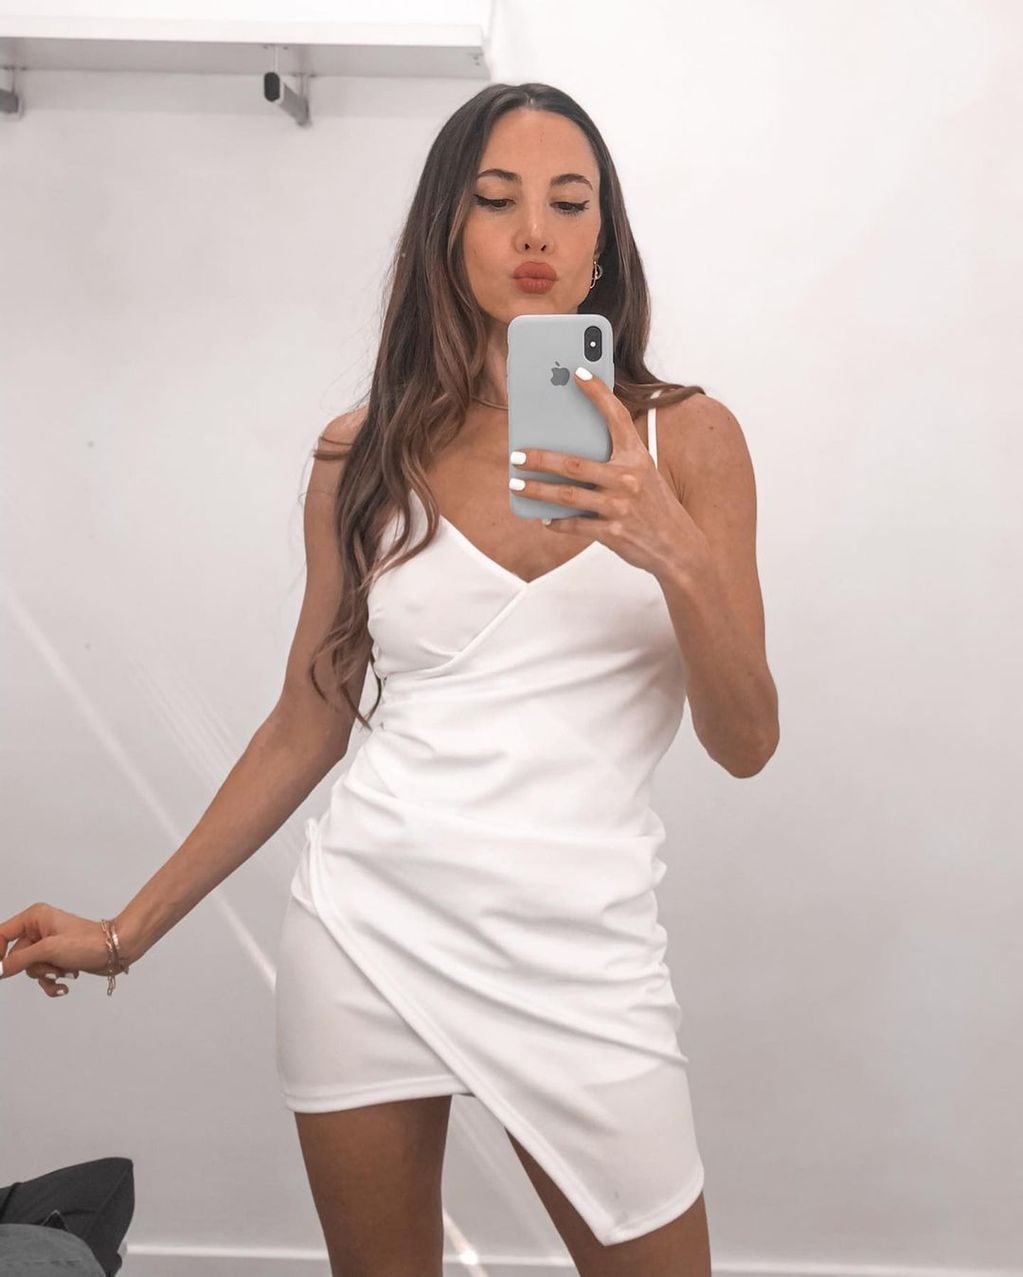 Magui Bravi con un elegante vestido blanco